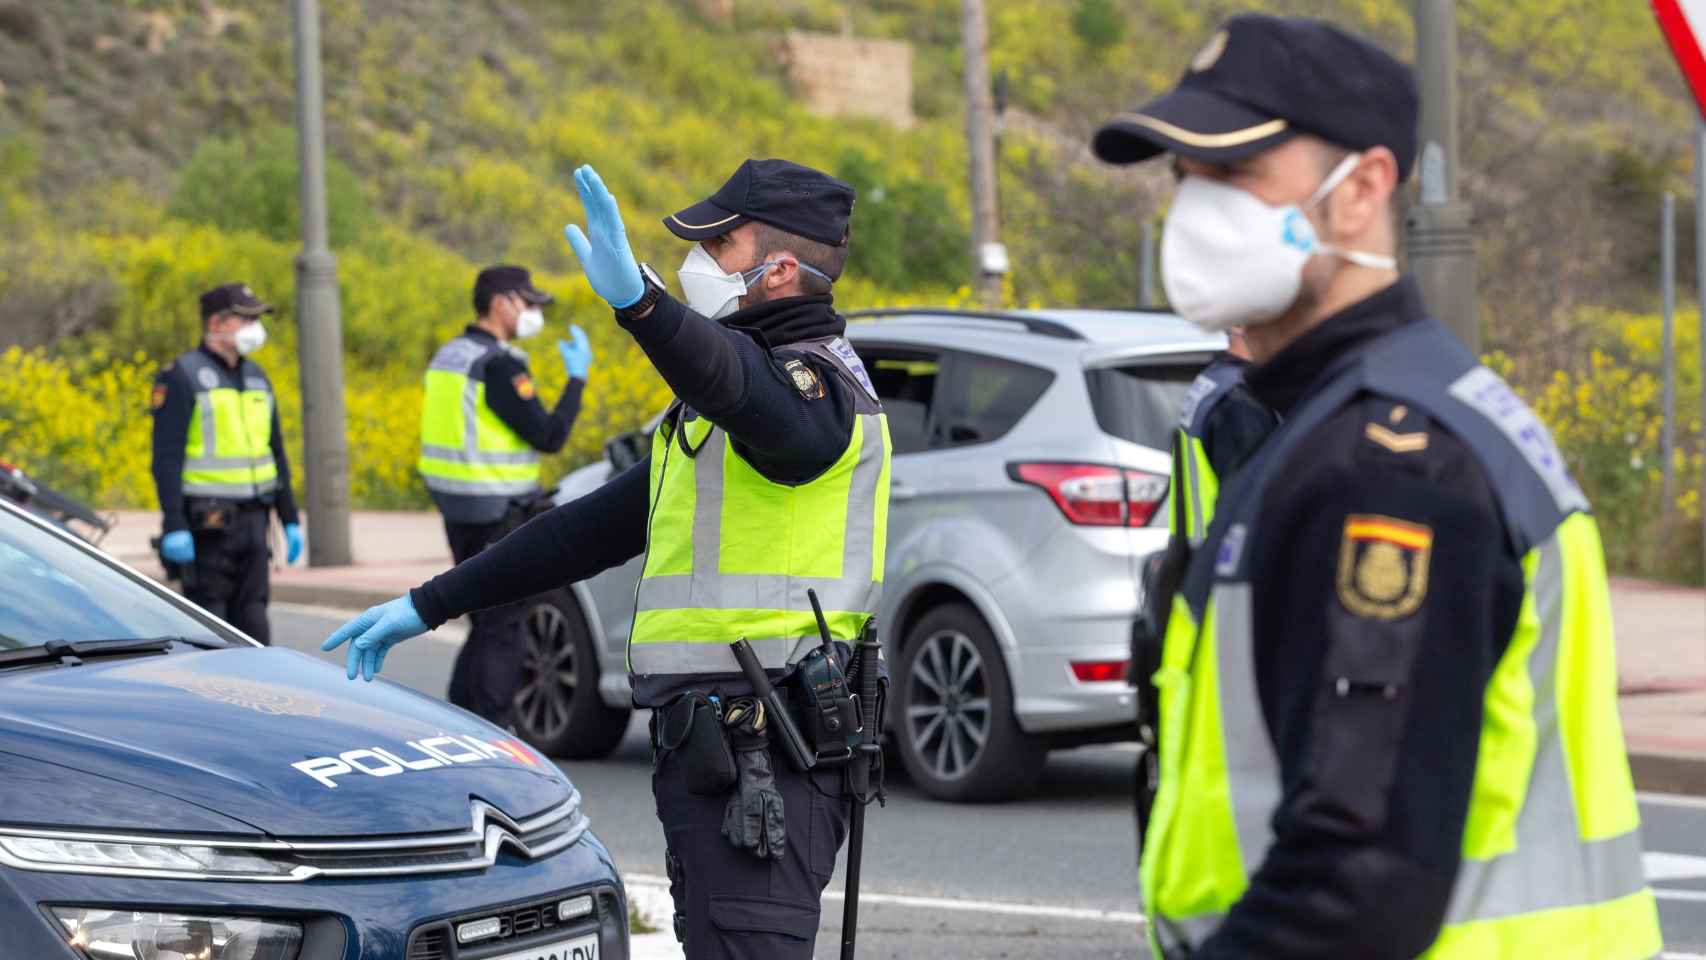 Policías nacionales con mascarillas durante un control en Logroño.